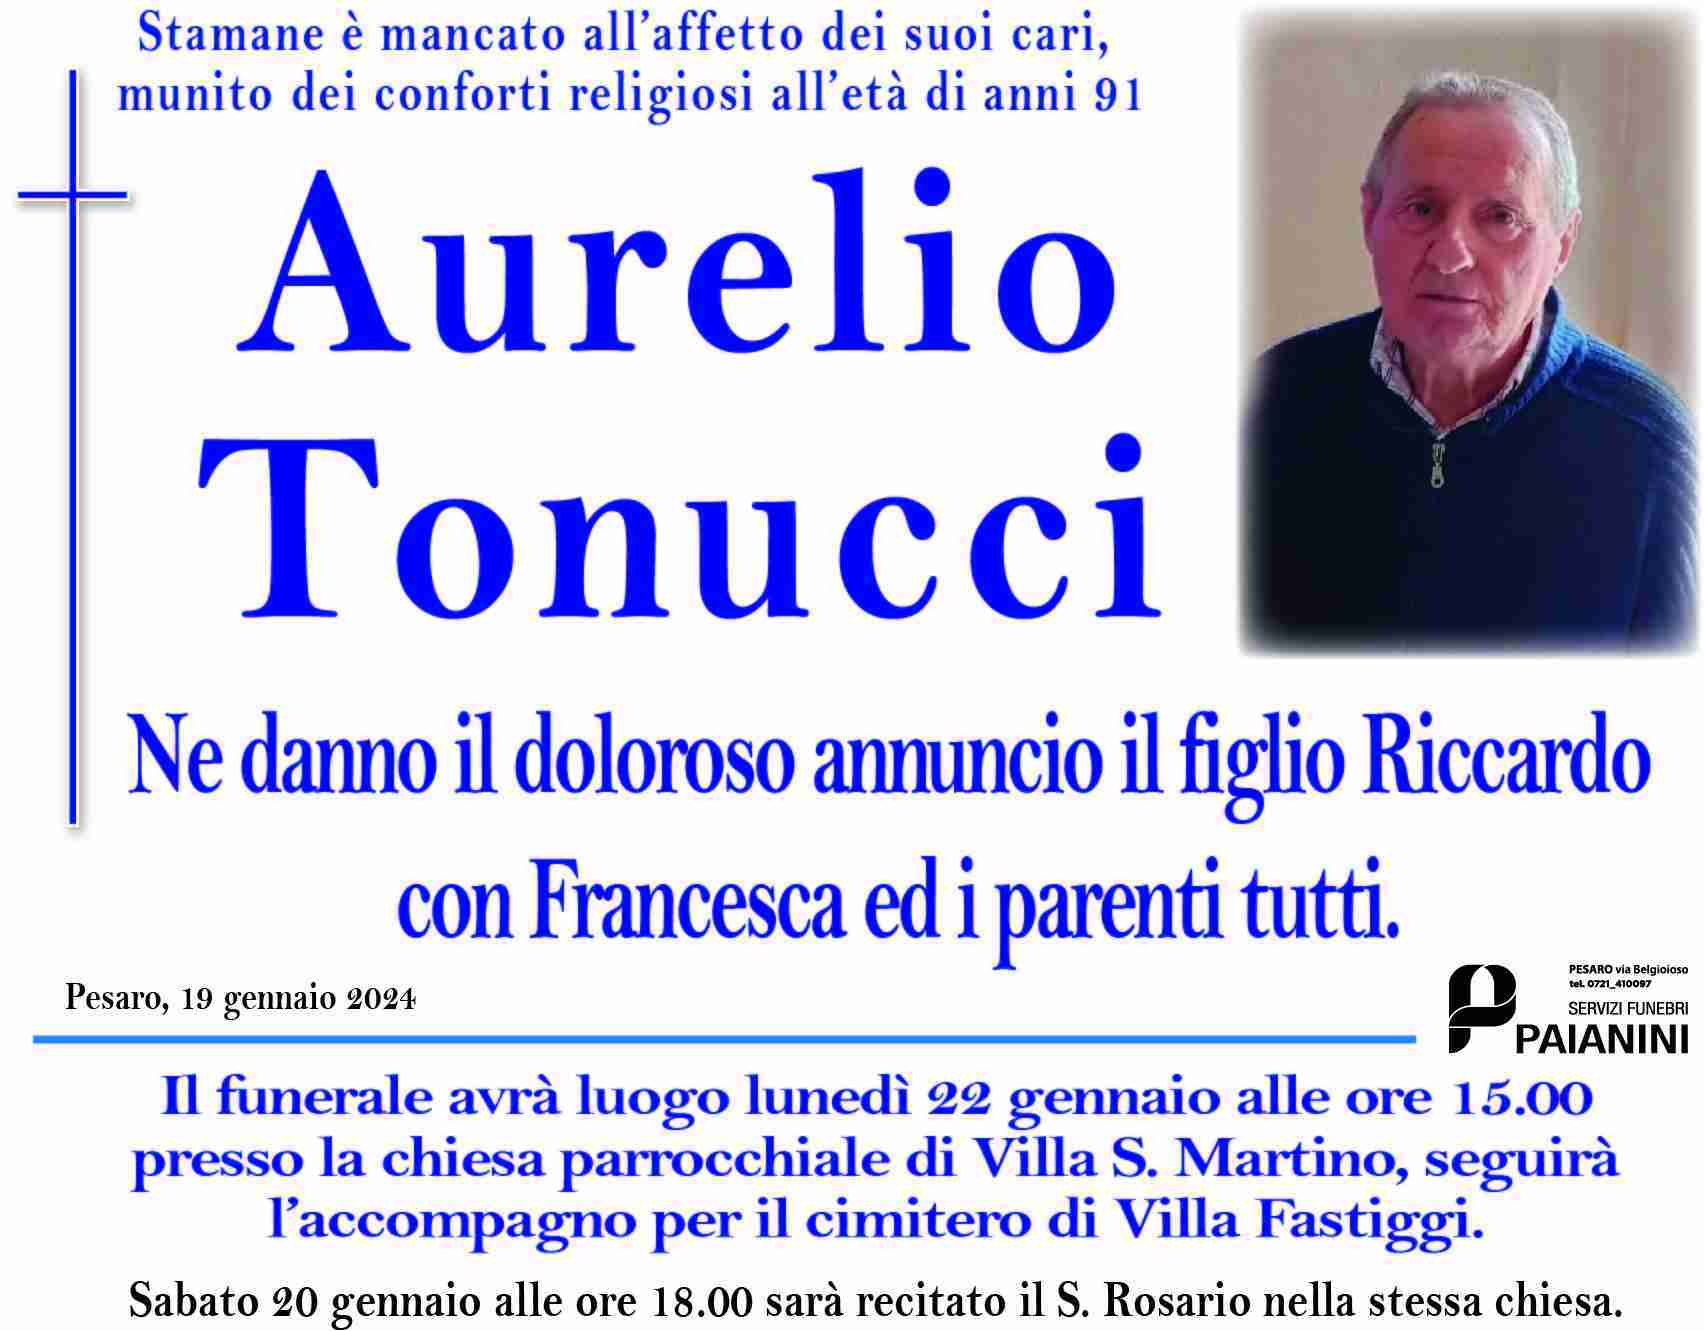 Aurelio Tonucci